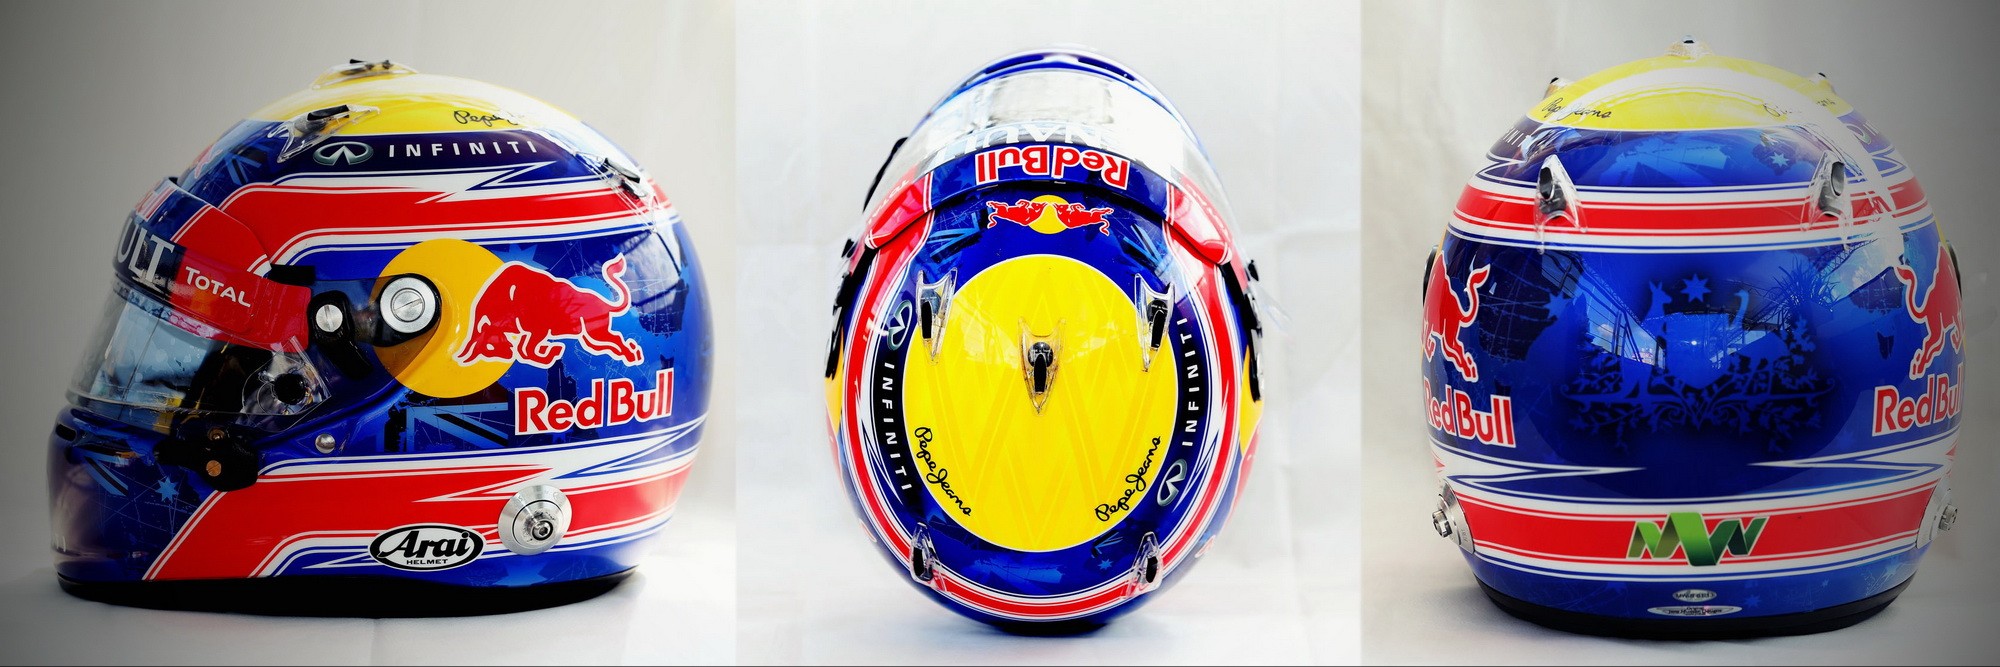 Шлем Марка Уэббера на сезон 2013 года | 2013 helmet of Mark Webber